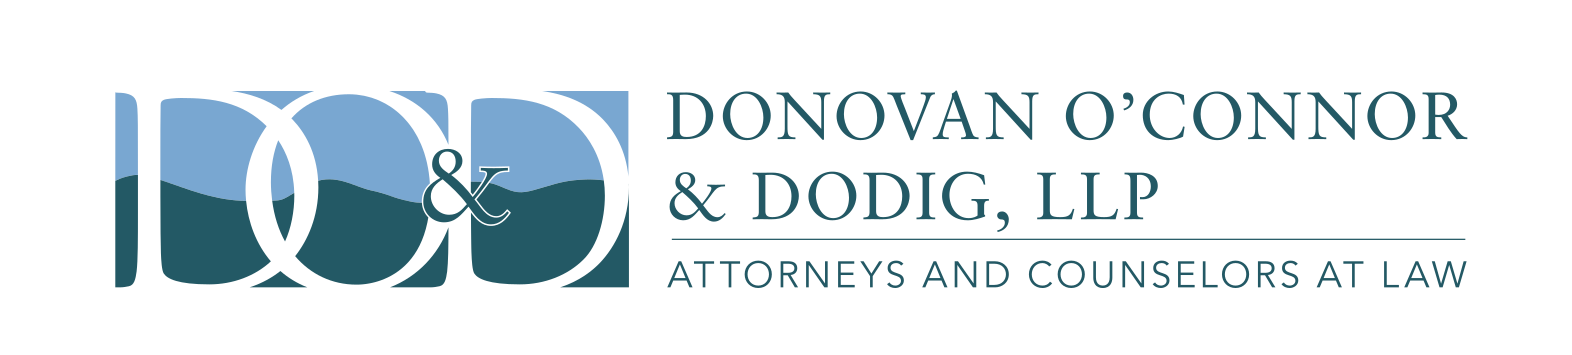 Donovan O'Connor & Dodig, LLP